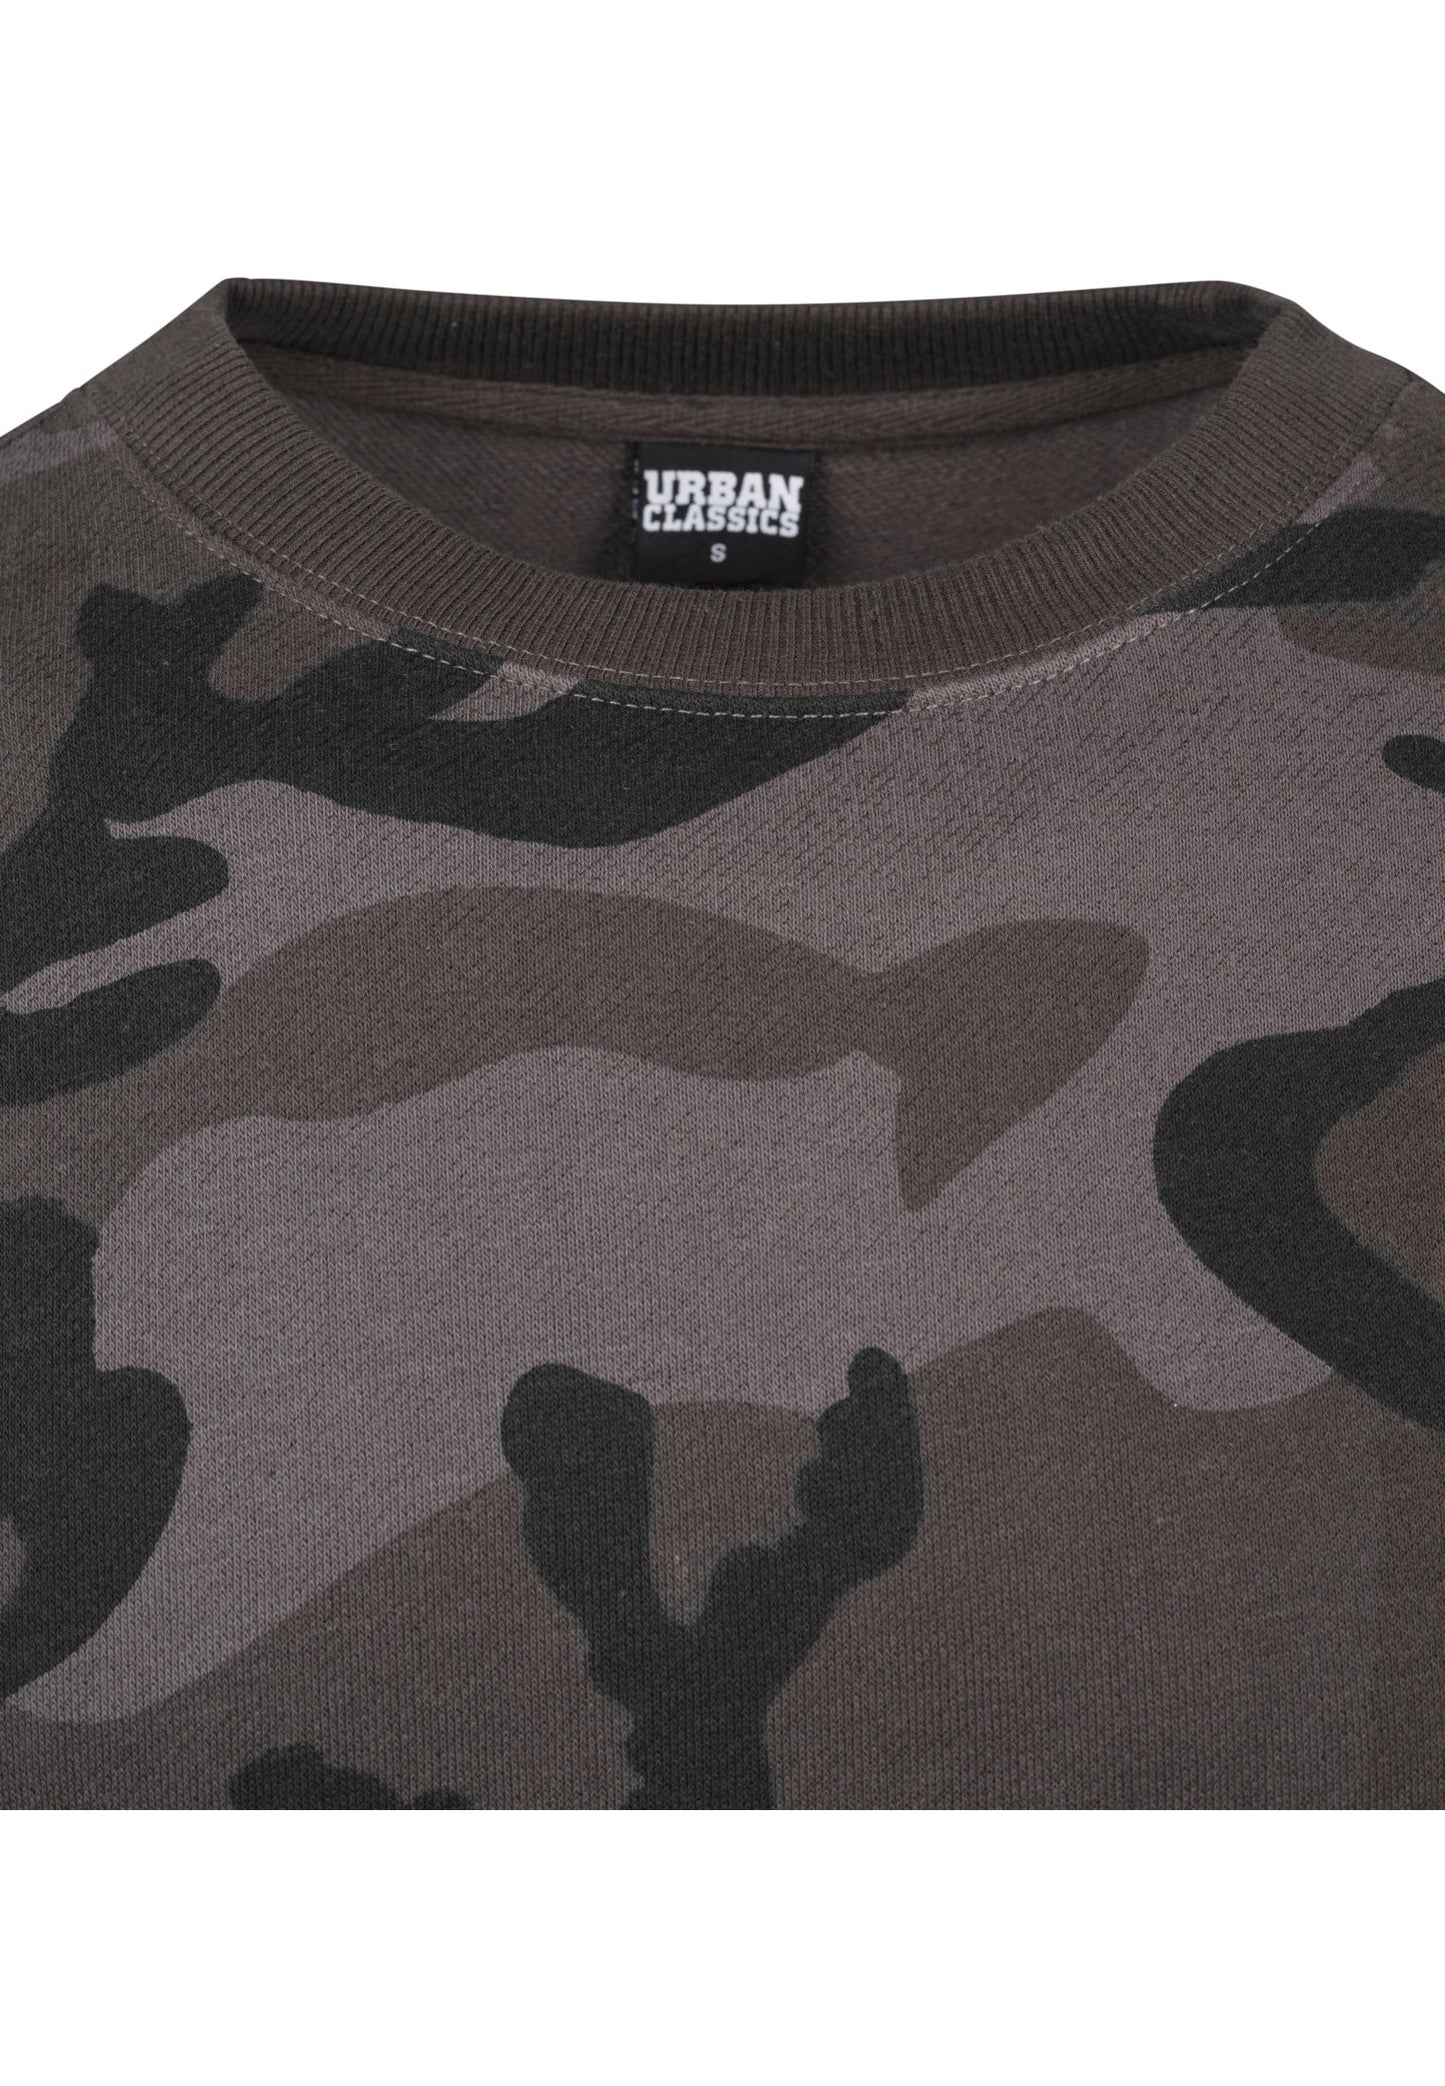 Urban Classics Camo Sweater in Dark Camo